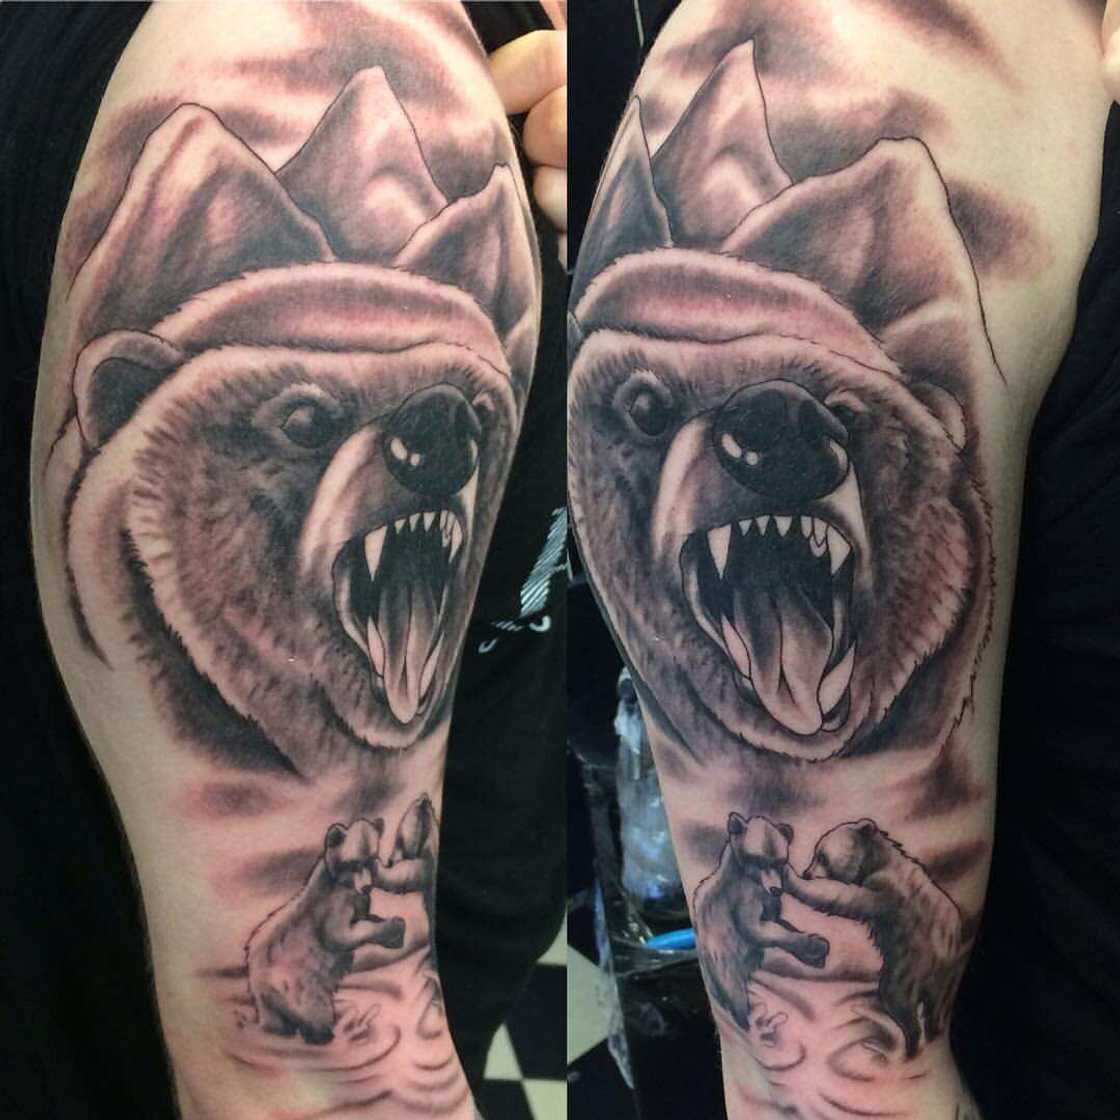 bear tattoo